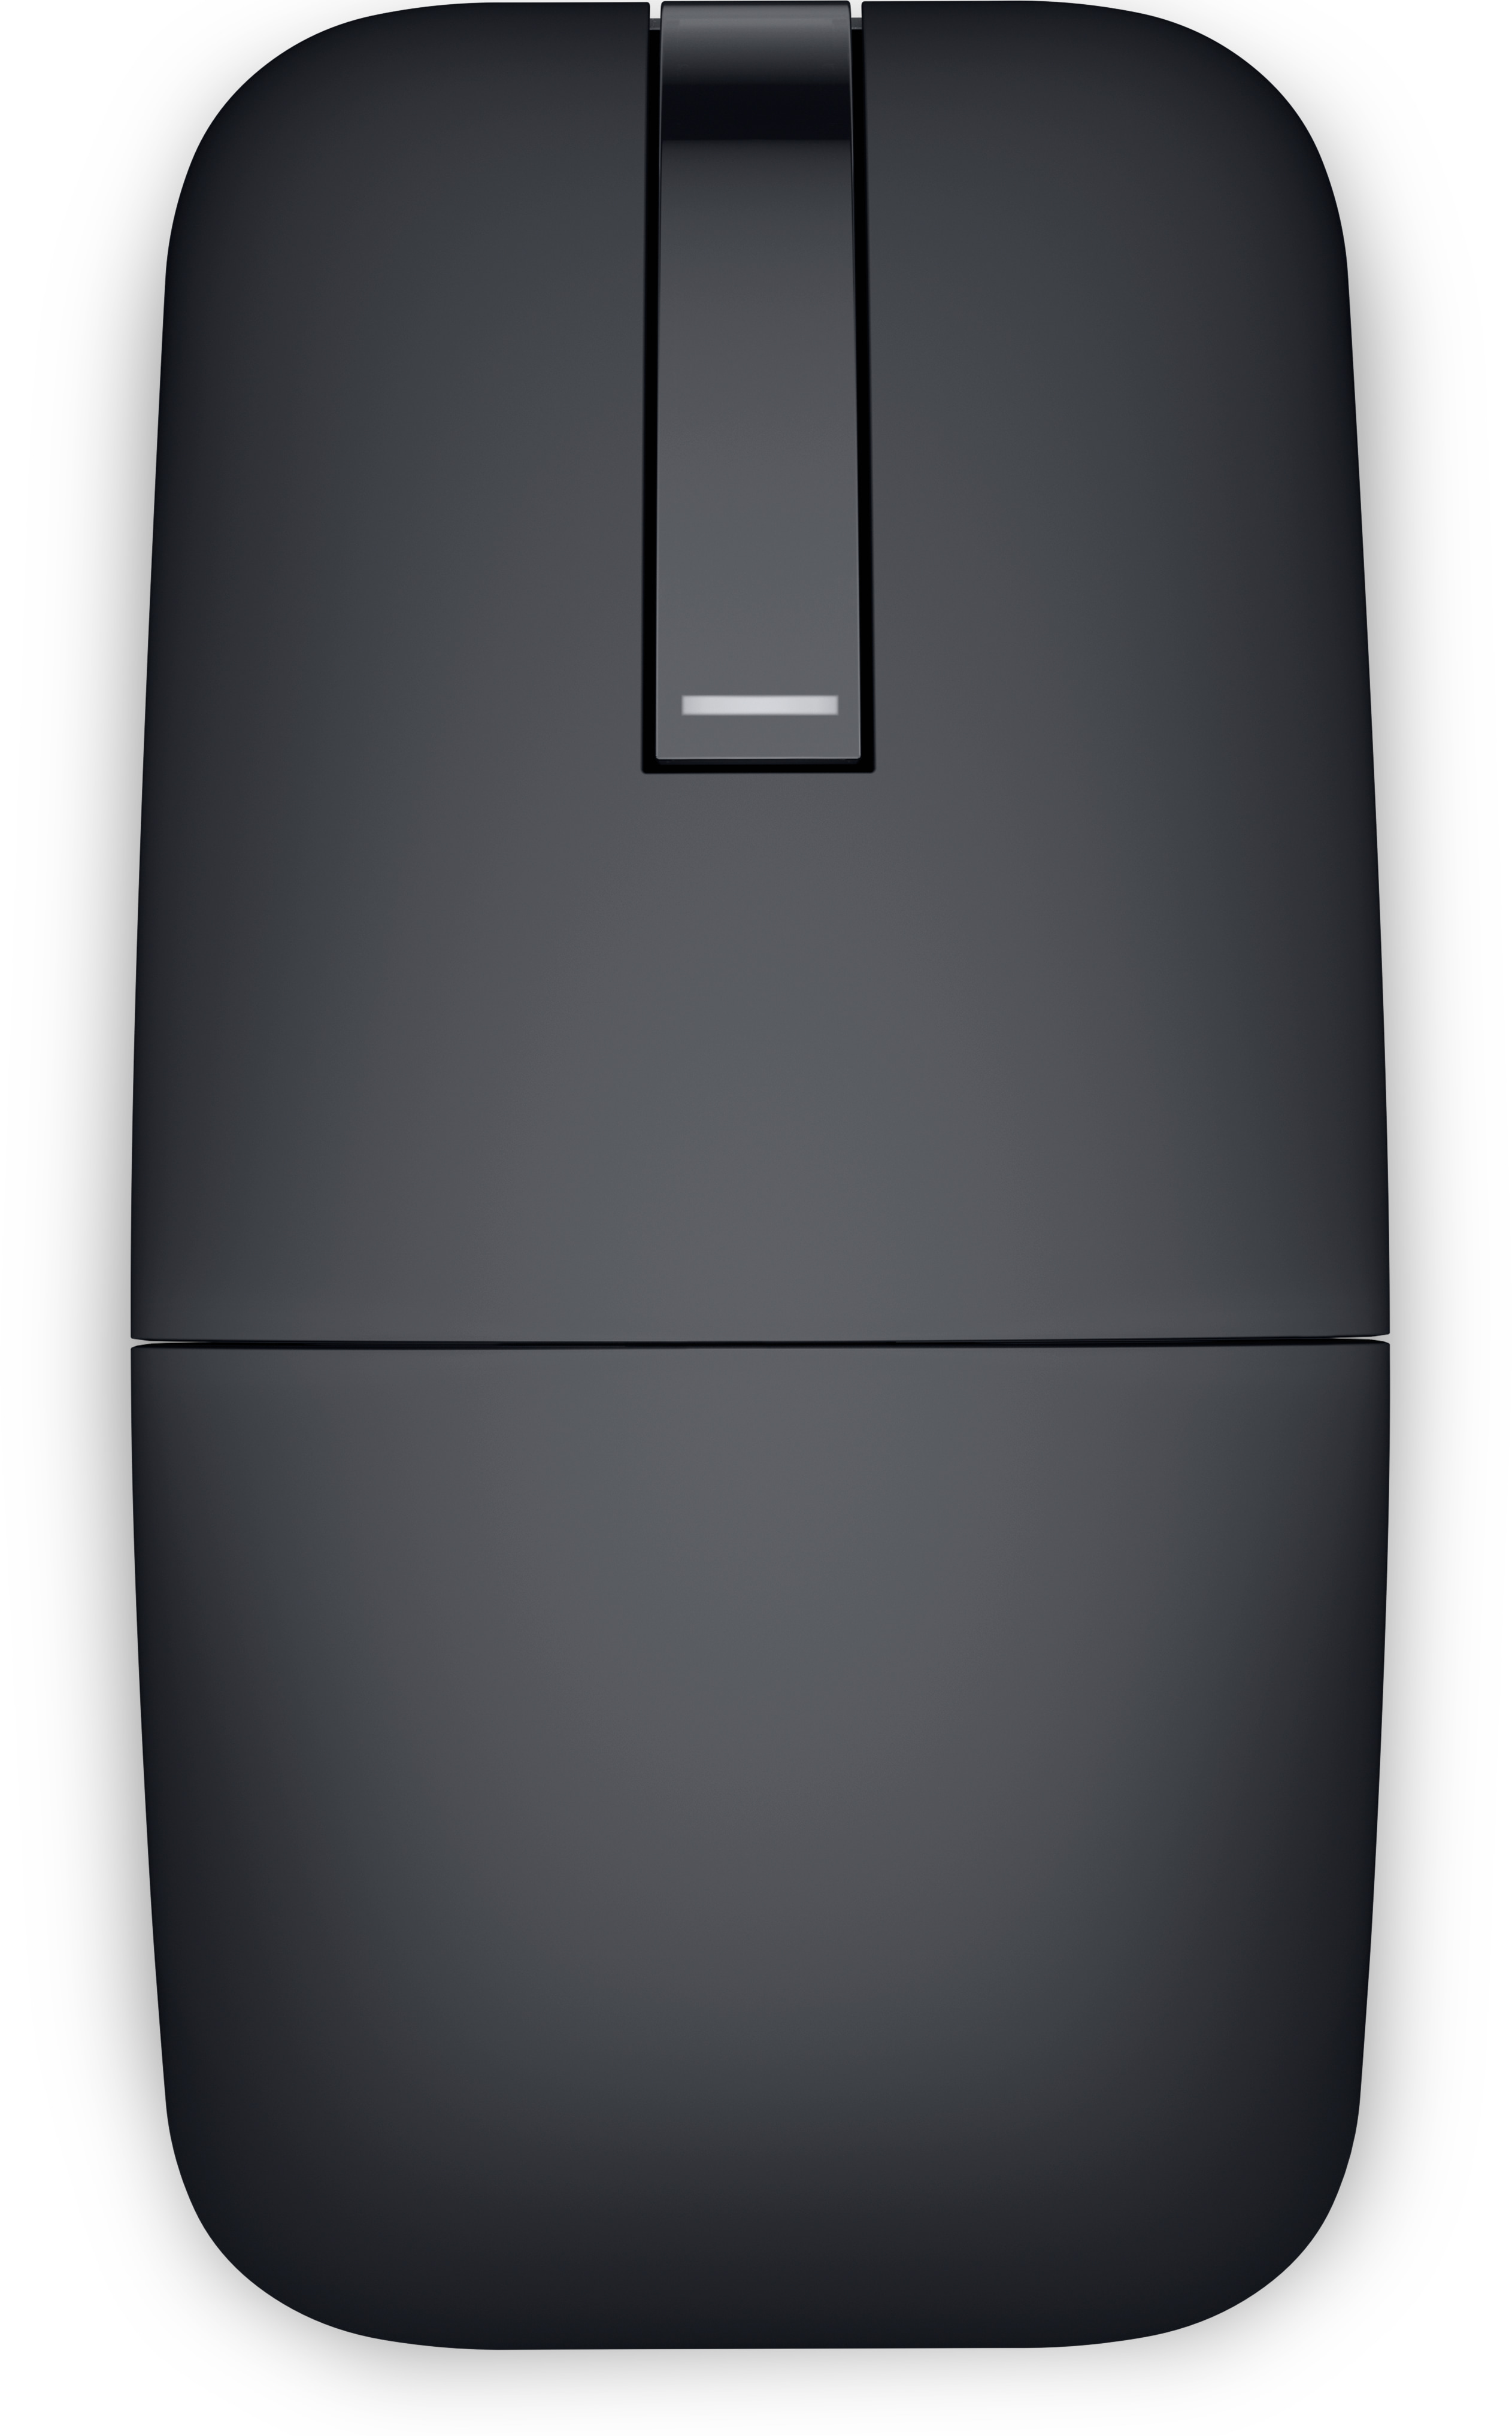 Souris de voyage Bluetooth Dell MS700 – Souris d'ordinateur